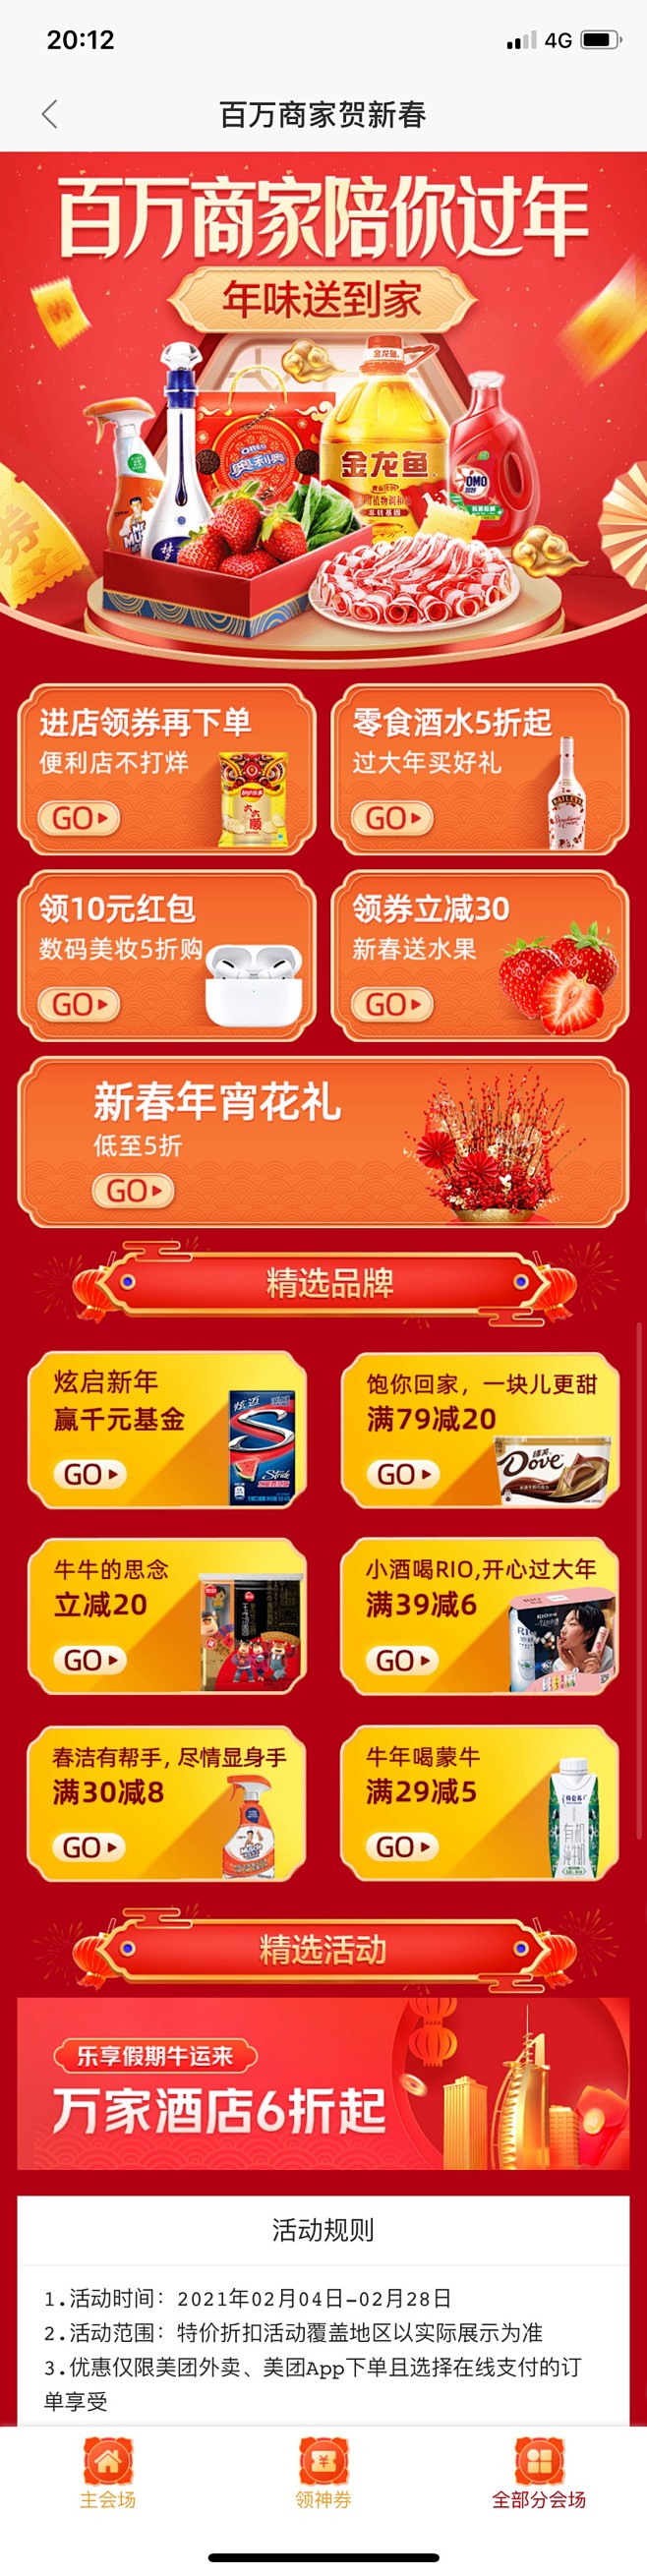 运营H5节日专题页-app年货节春节活动...